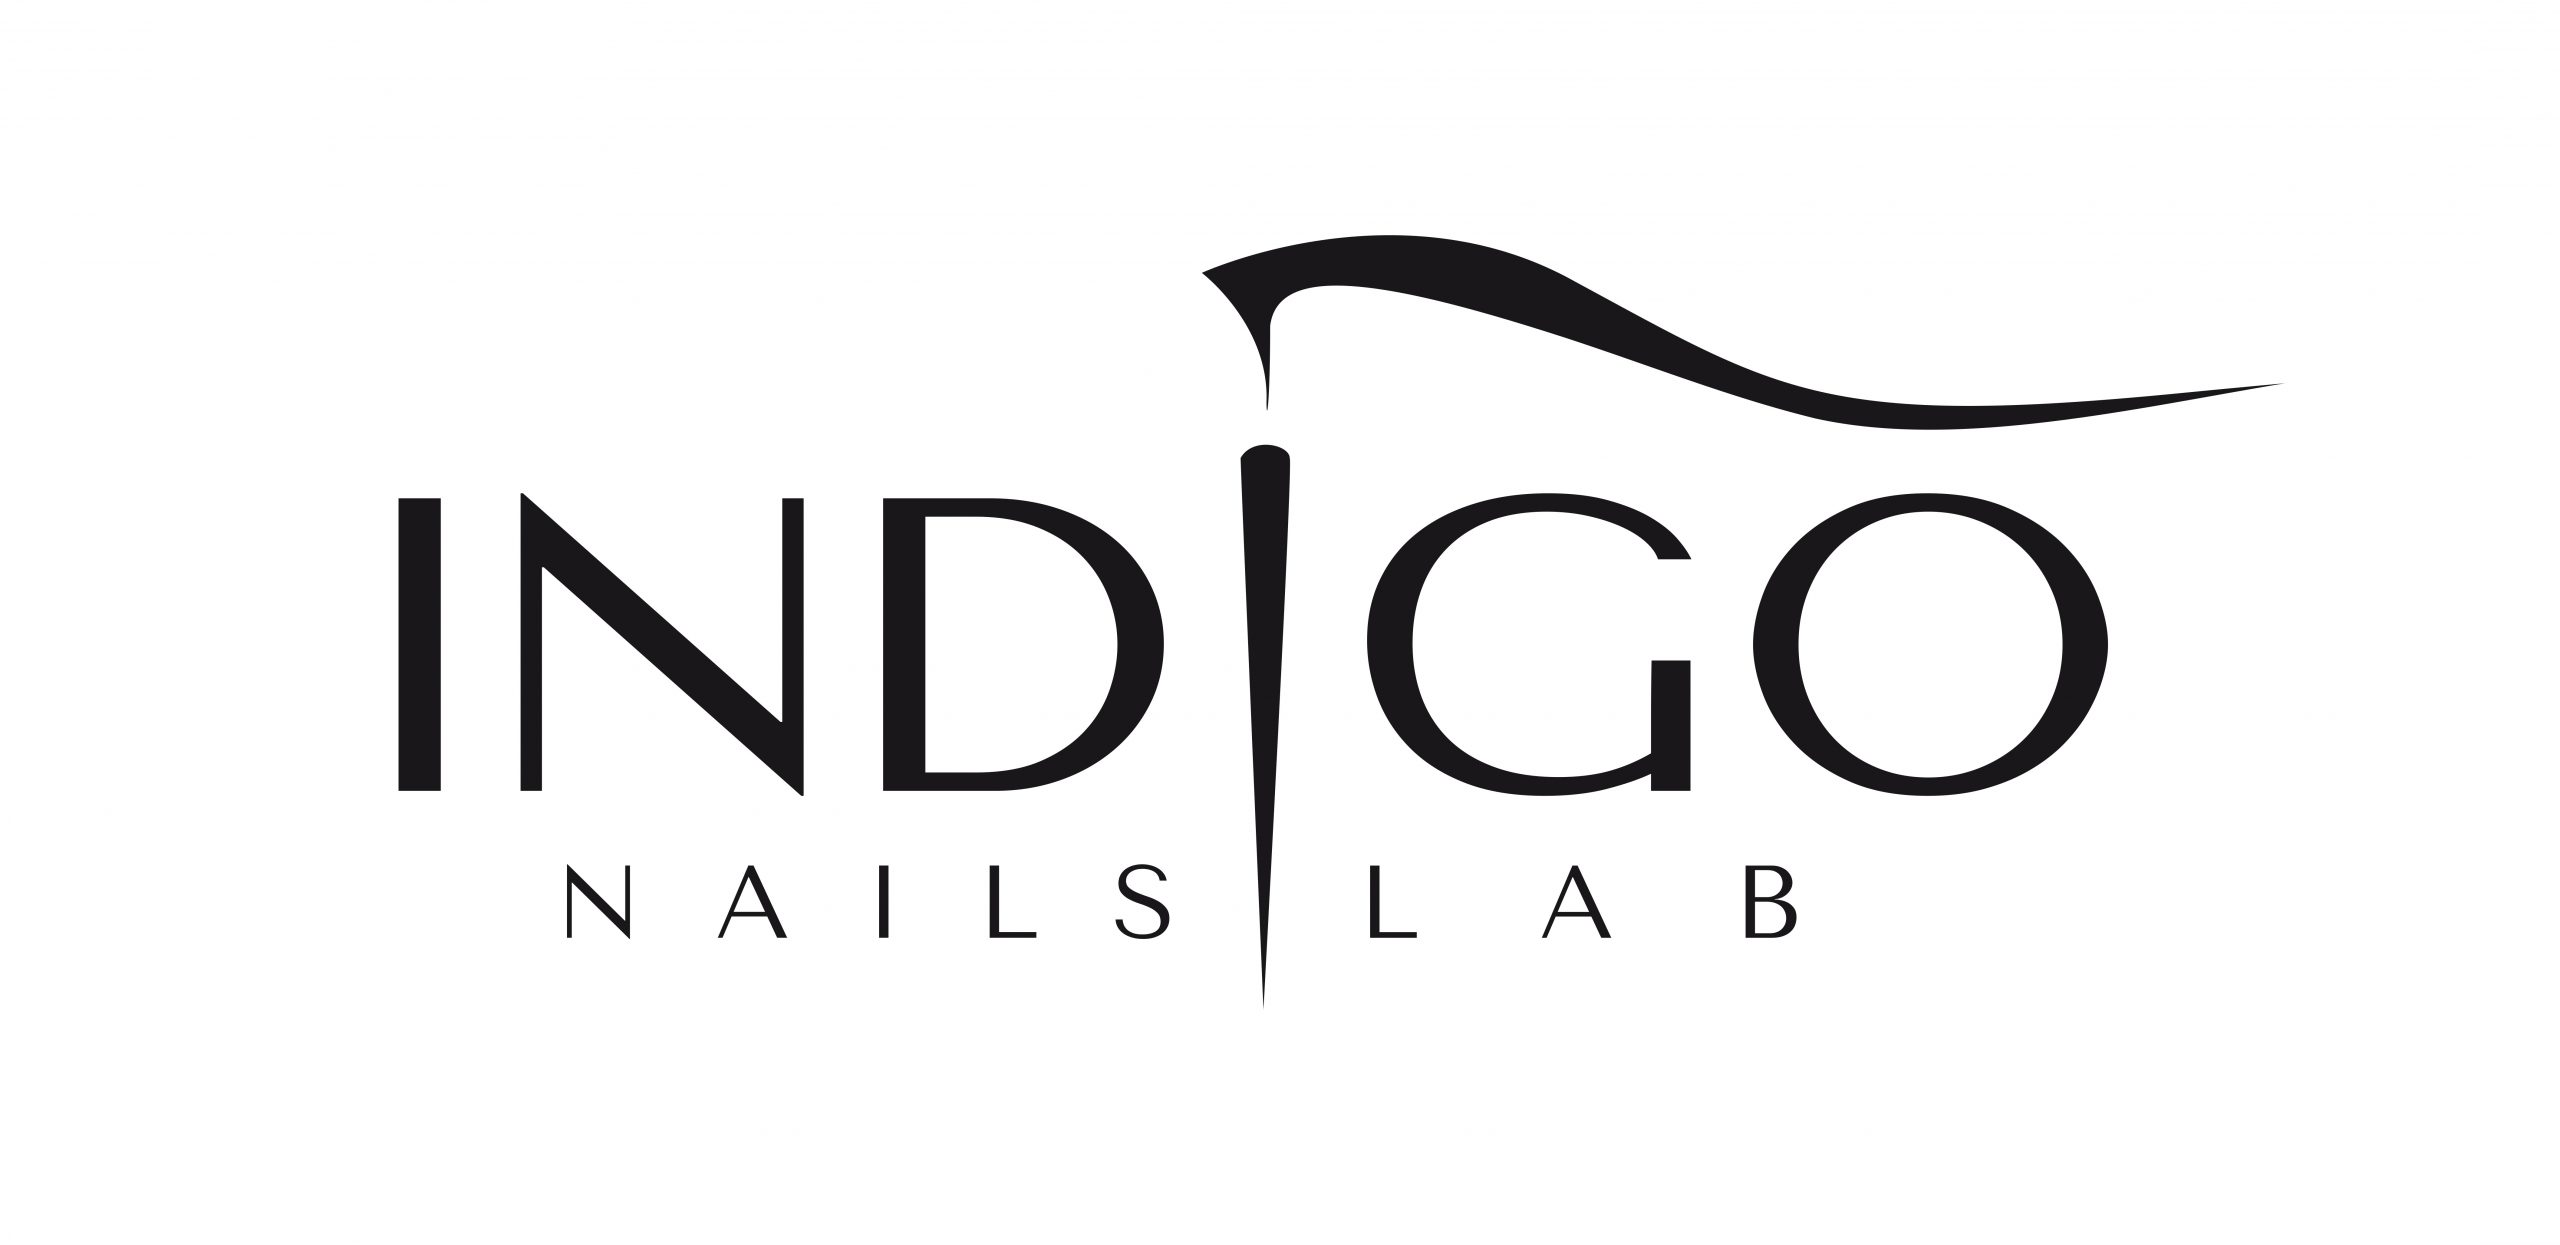 Indigo Nails Lab Belgium